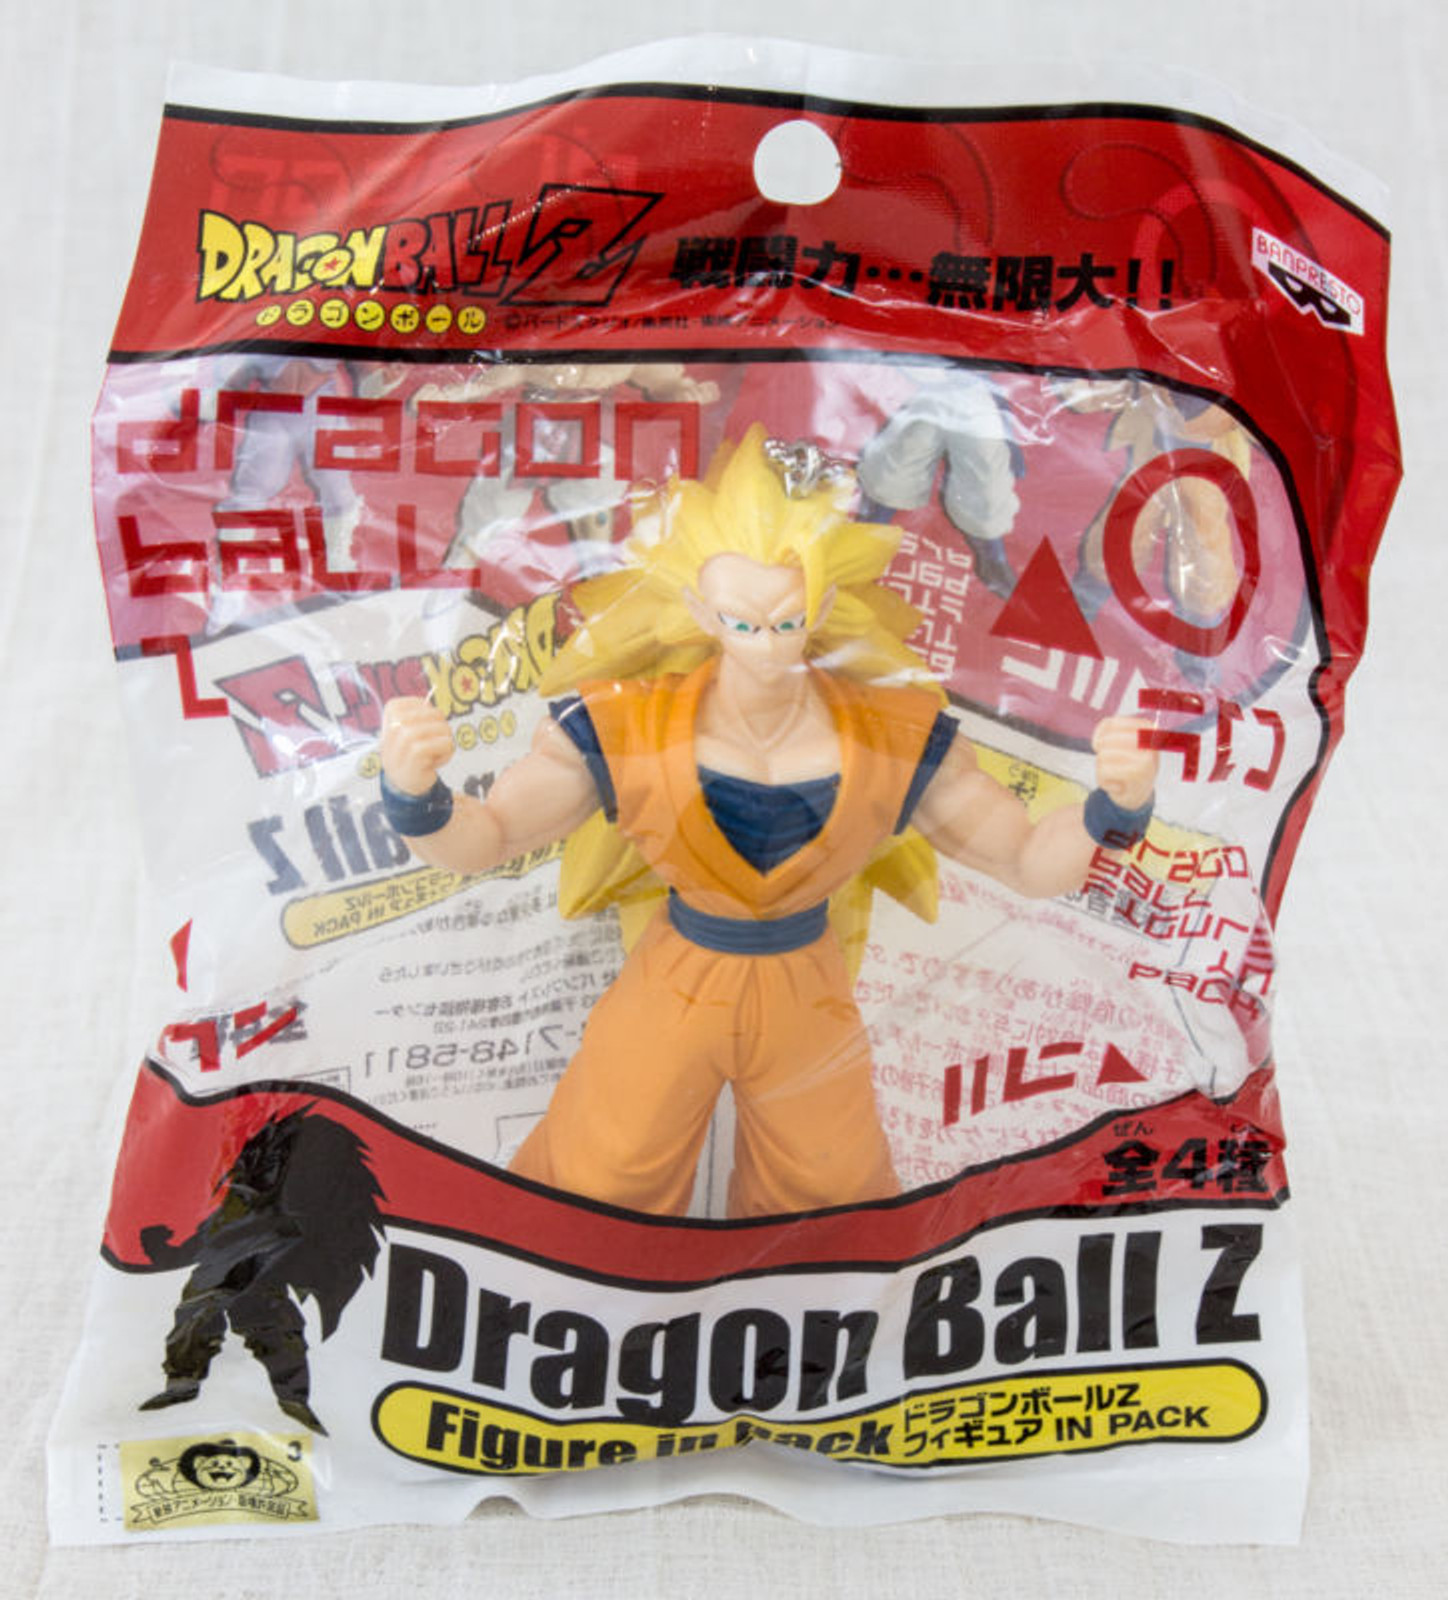 Dragon Ball Z Figure in Pack SS3 Son Gokou Key Chain Banpresto JAPAN ANIME MANGA